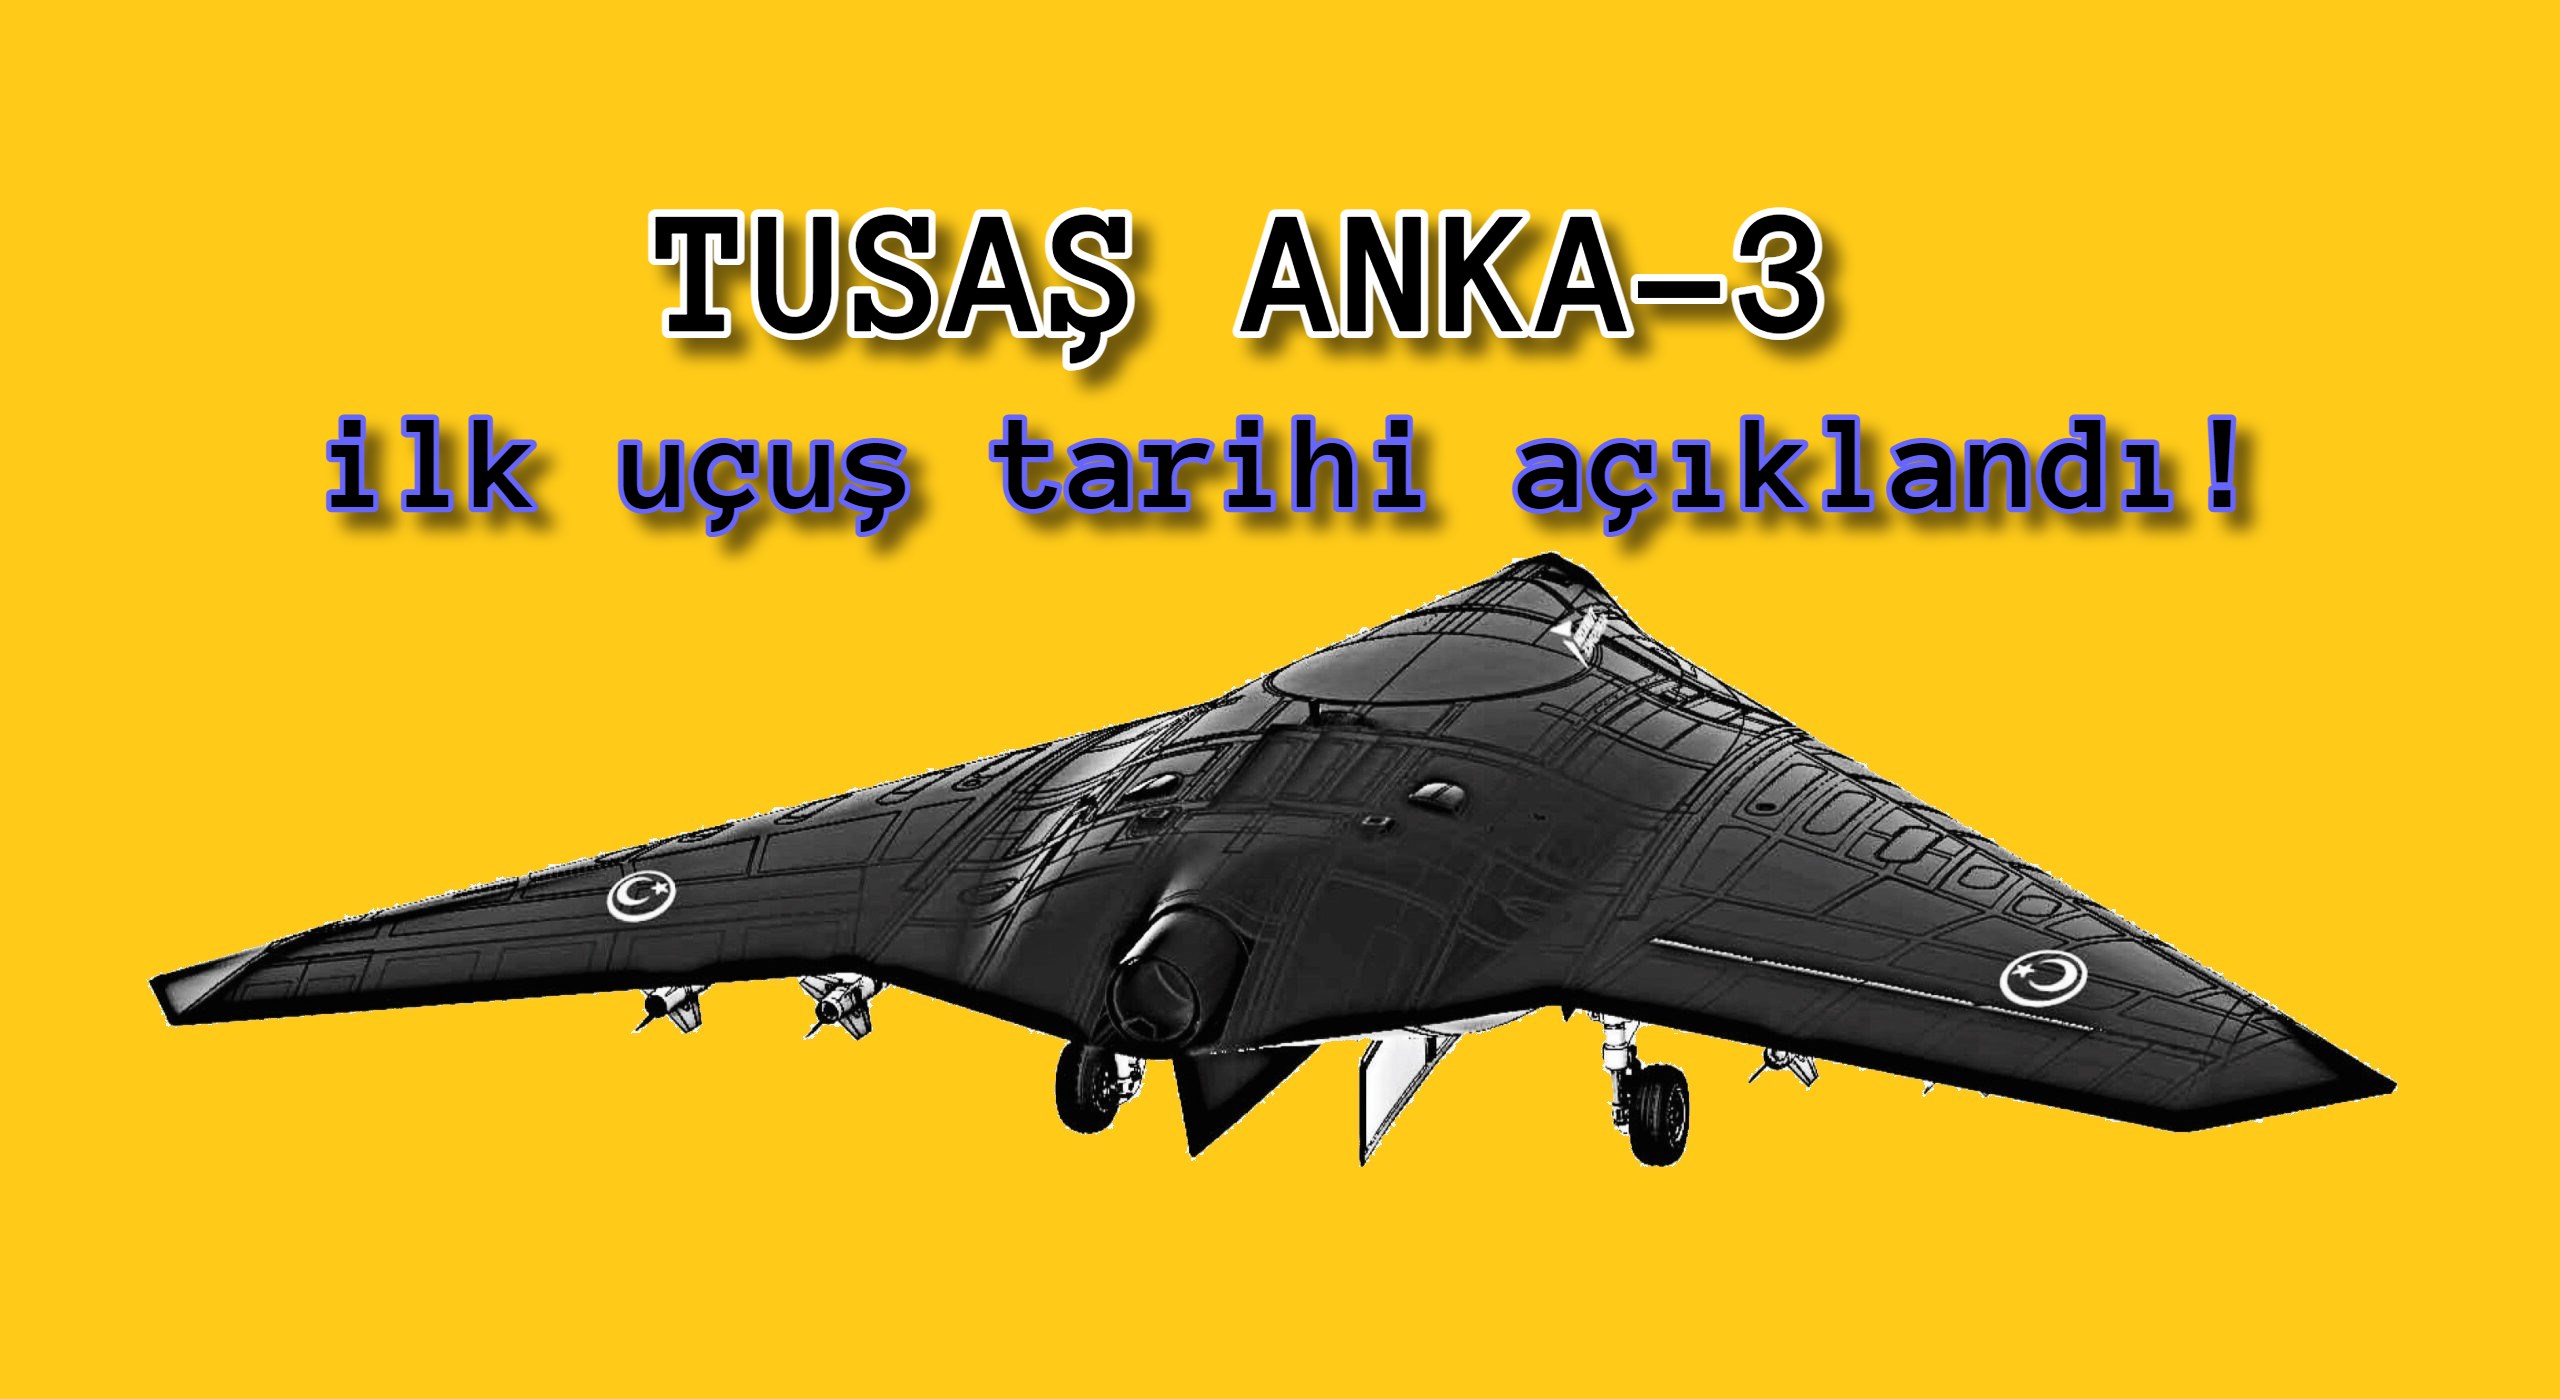 İnsansız savaş uçağı TUSAŞ ANKA-3’ün ilk uçuş tarihi açıklandı!